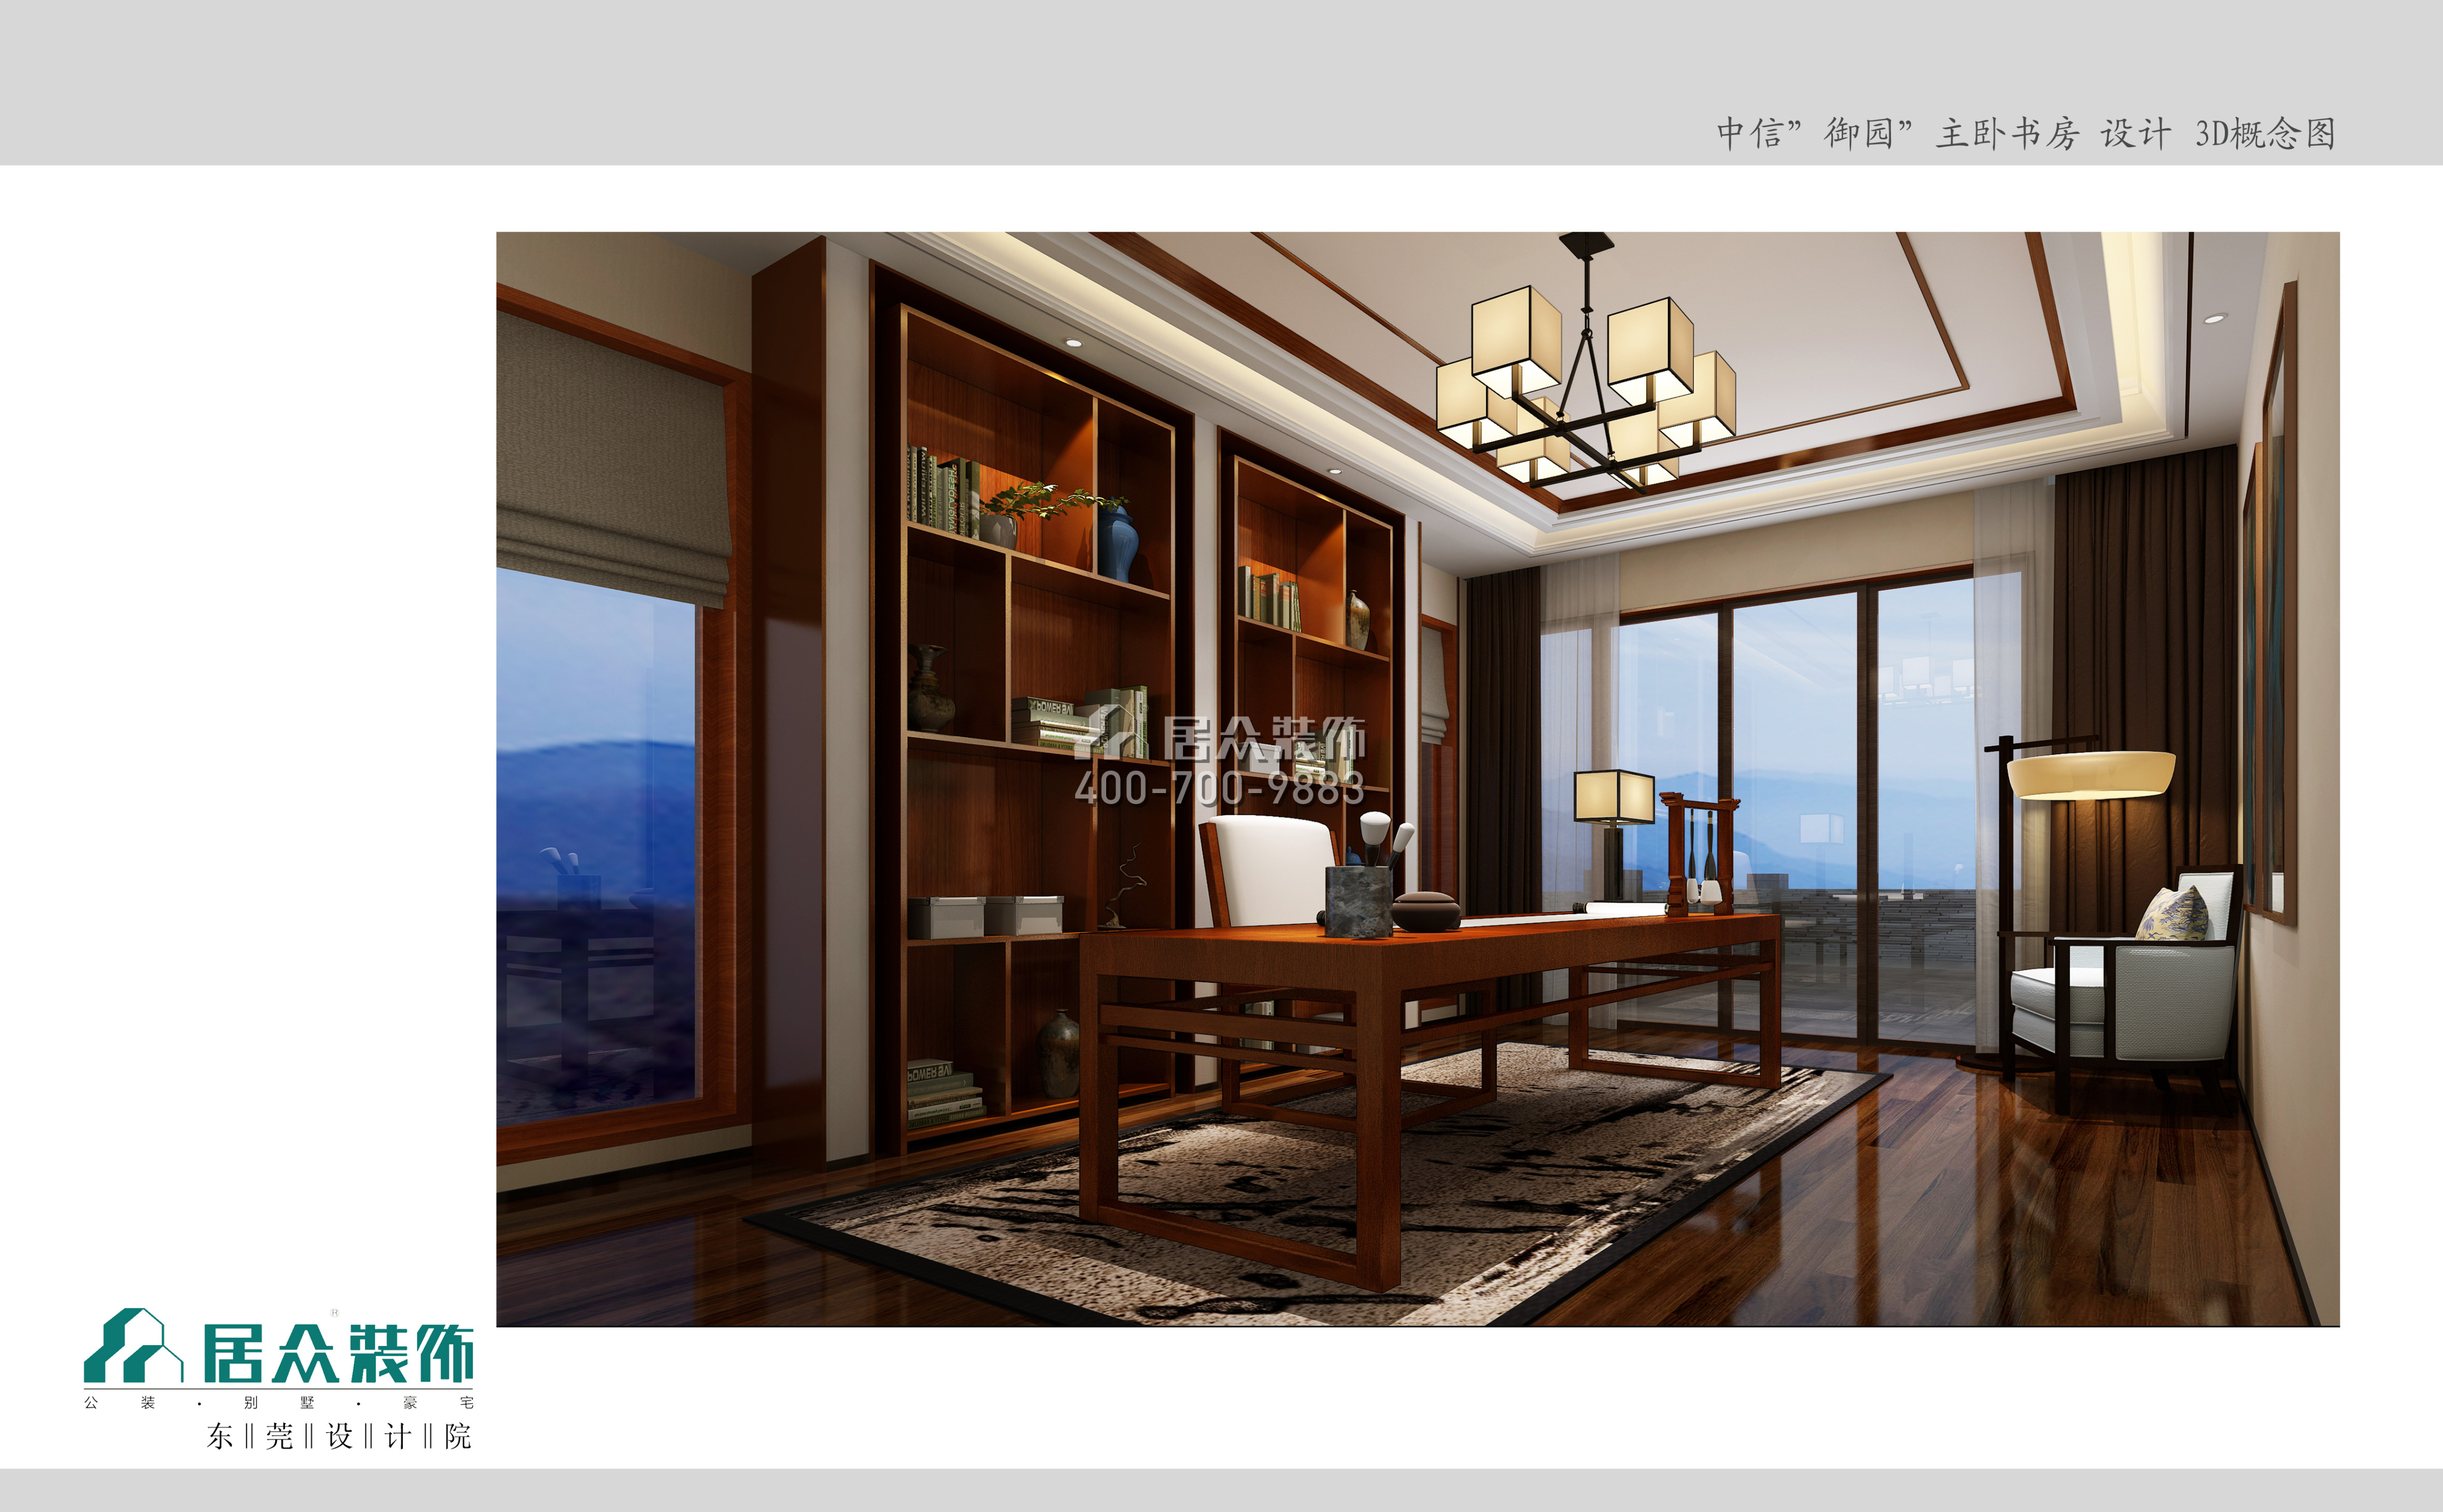 中信御园800平方米中式风格别墅户型卧室装修效果图